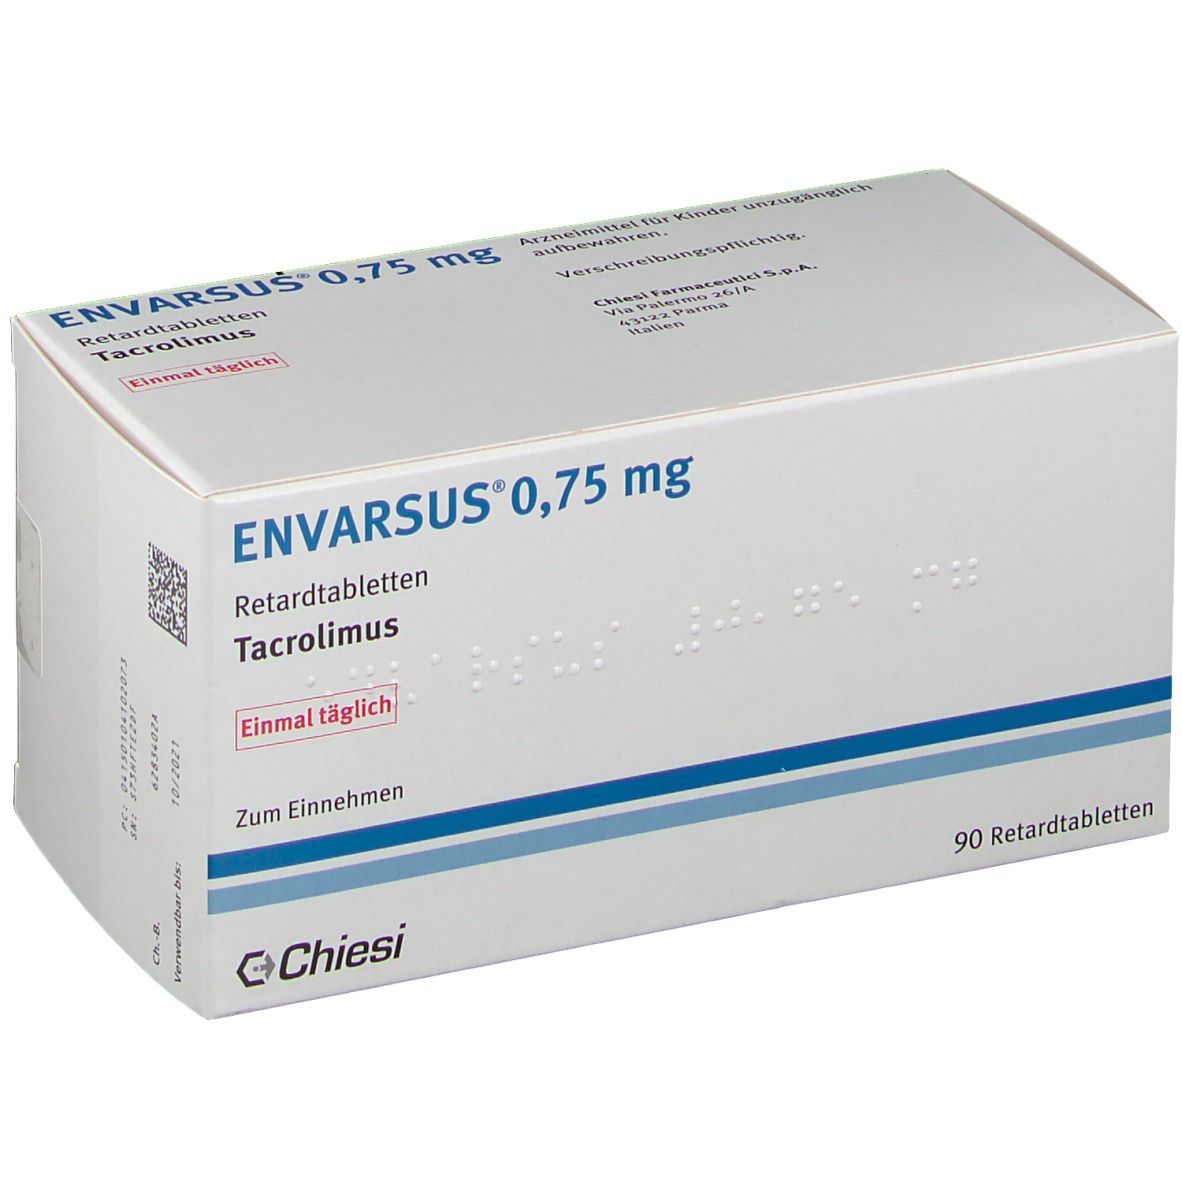 ENVARSUS® 0.75 mg